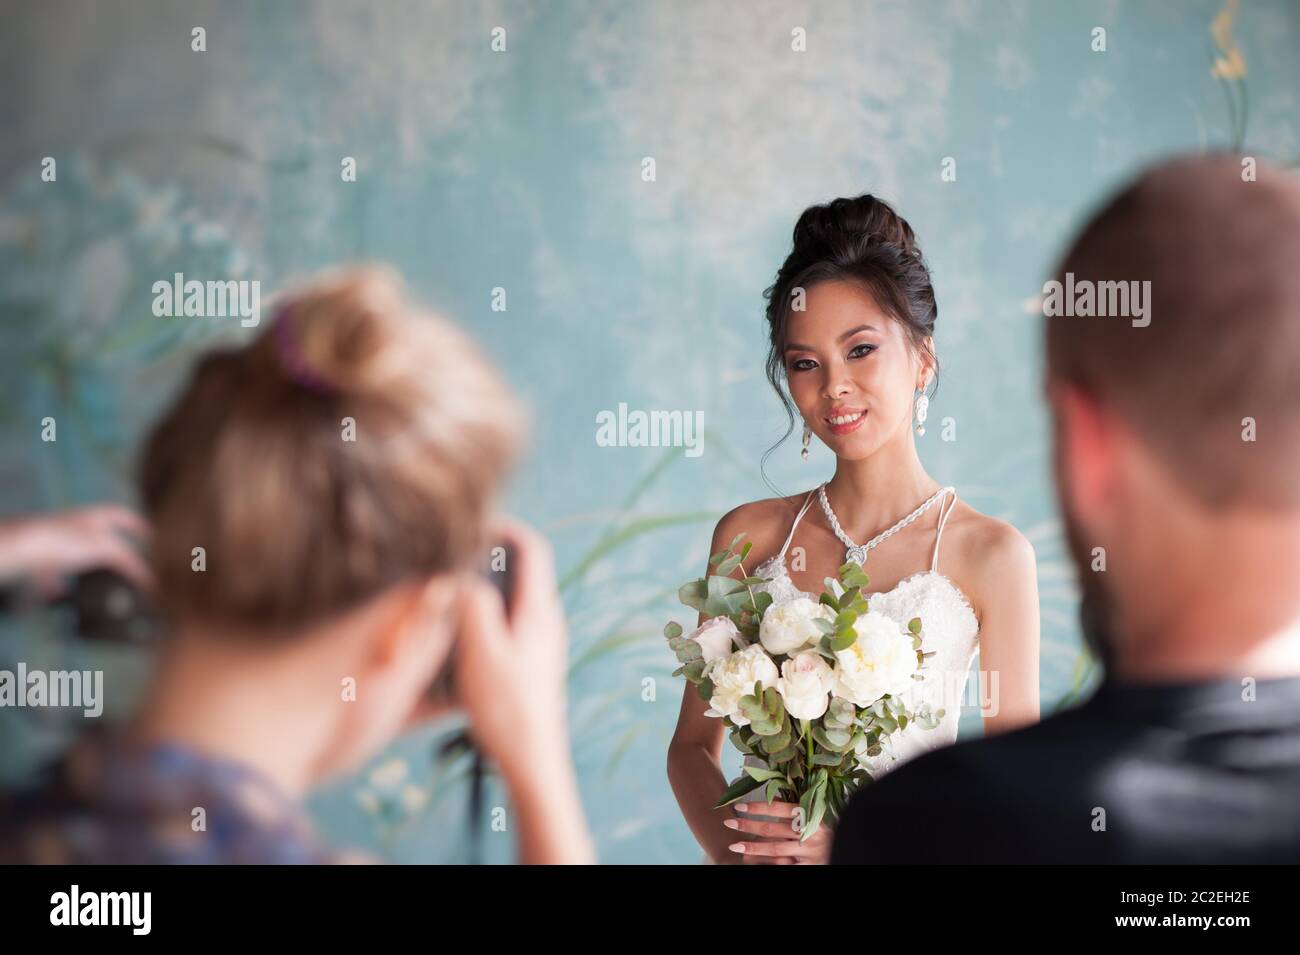 Foto di sposa da fotografi professionisti in un matrimonio Foto Stock